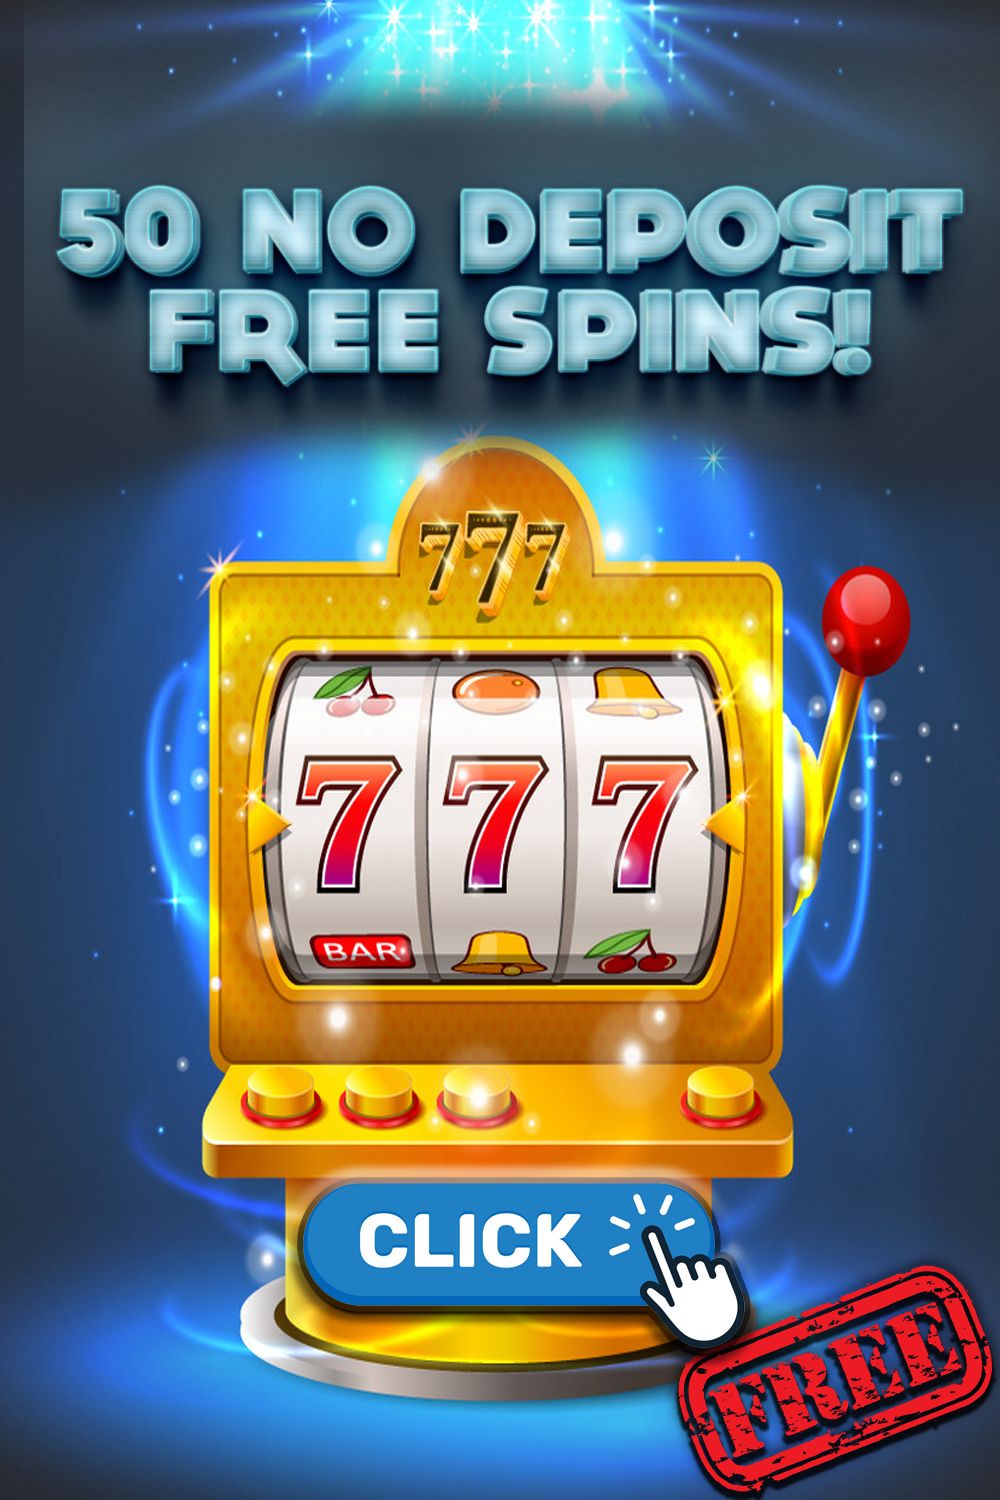 Casino Online Free Spins No Deposit